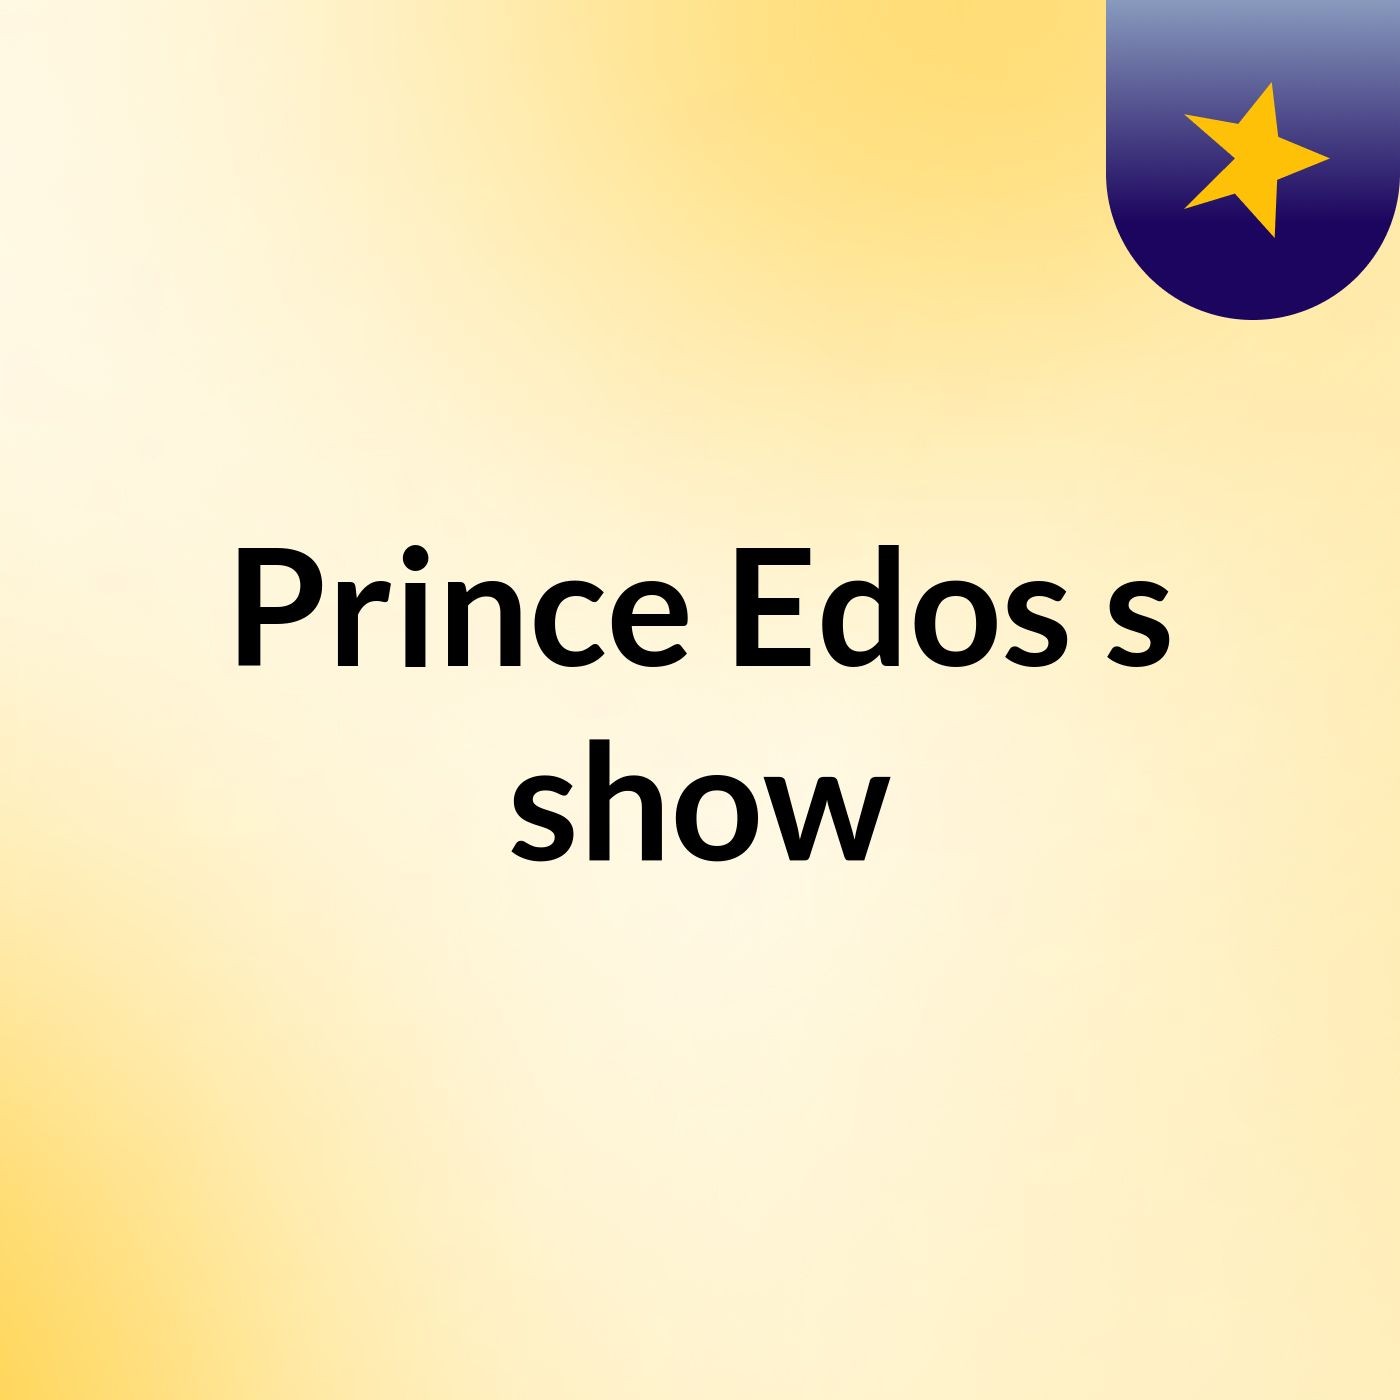 Prince Edos's show